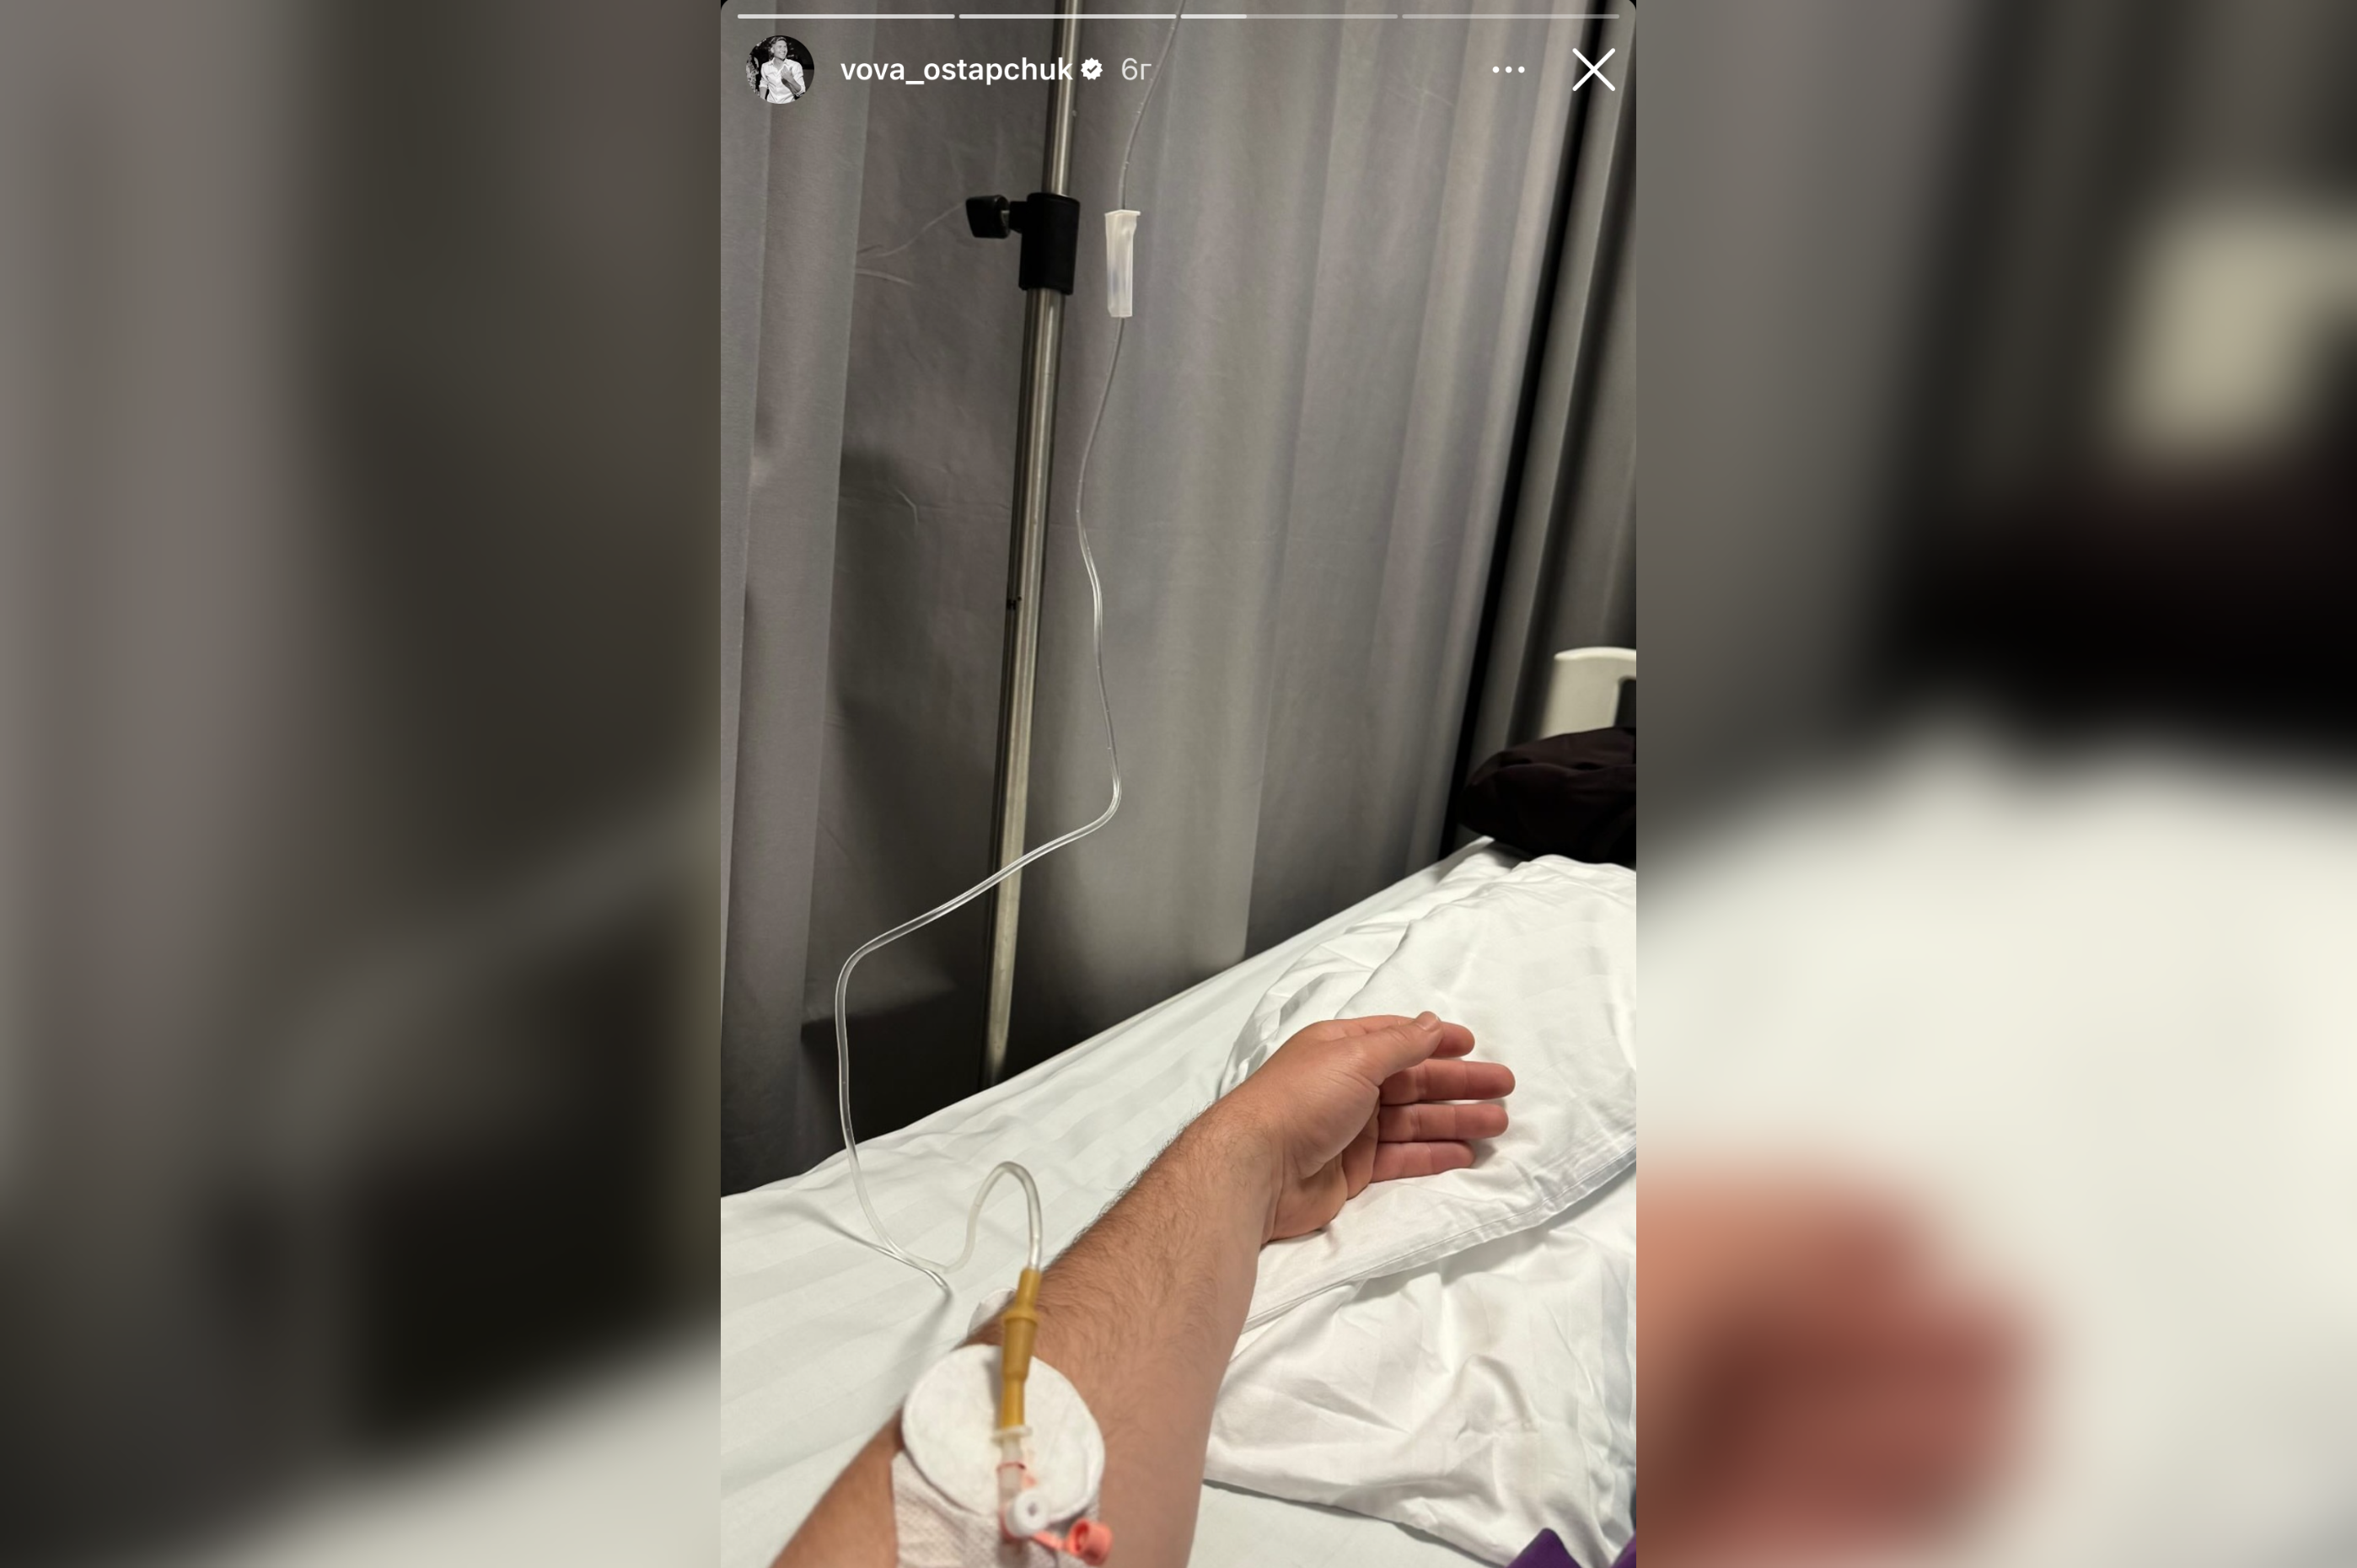 Володимир Остапчук повідомив, що потрапив у лікарню і назвав причину. Фото з Instagram @vova_ostapchuk